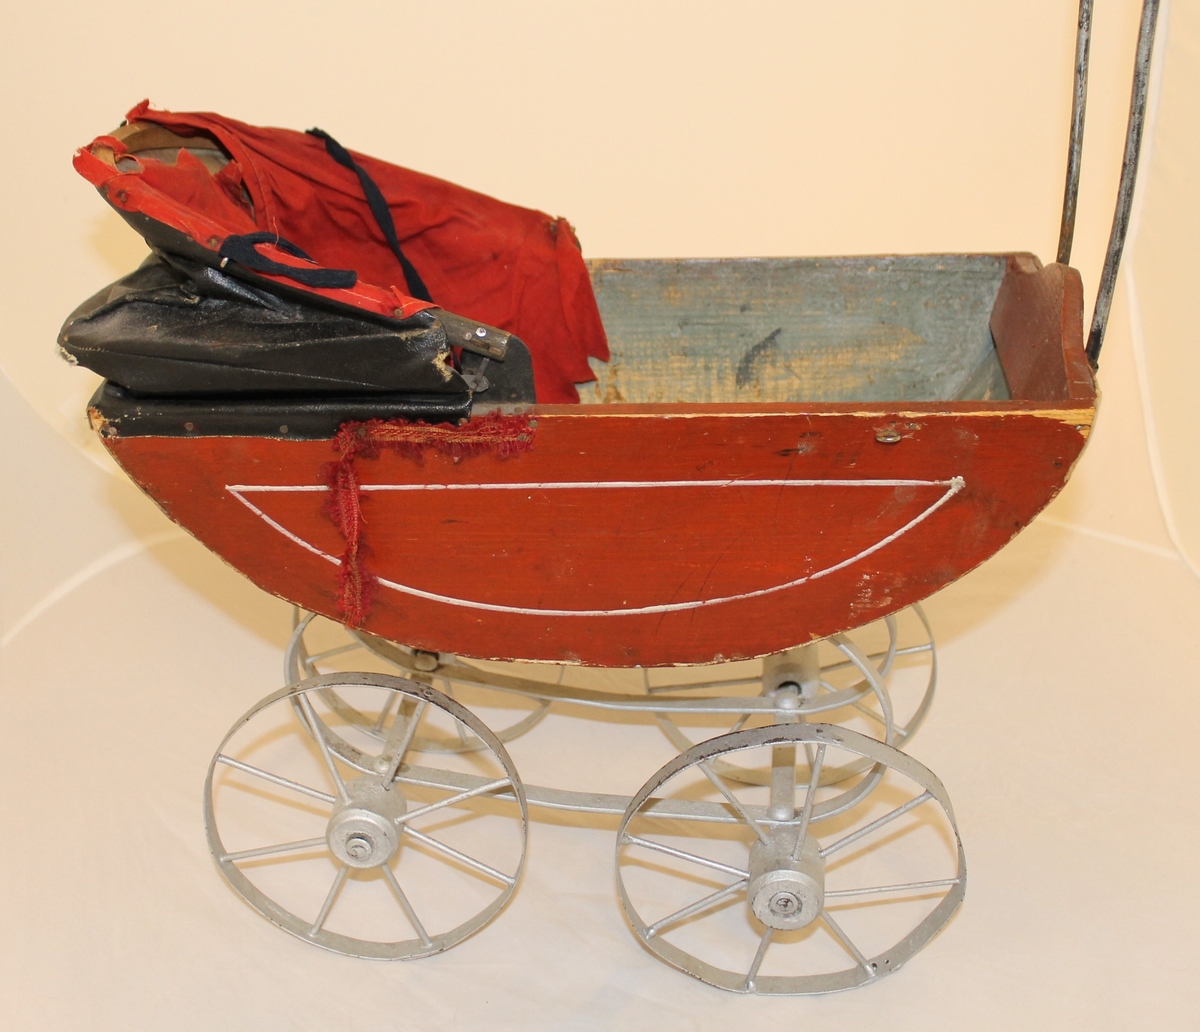 Vognens skrog hviler på fjærer, har 4 hjul og Høy hank med tre håndtak.
Oppi vognen: et putevar og laken med et heklet felt, kaninskinn og sengeteppe.